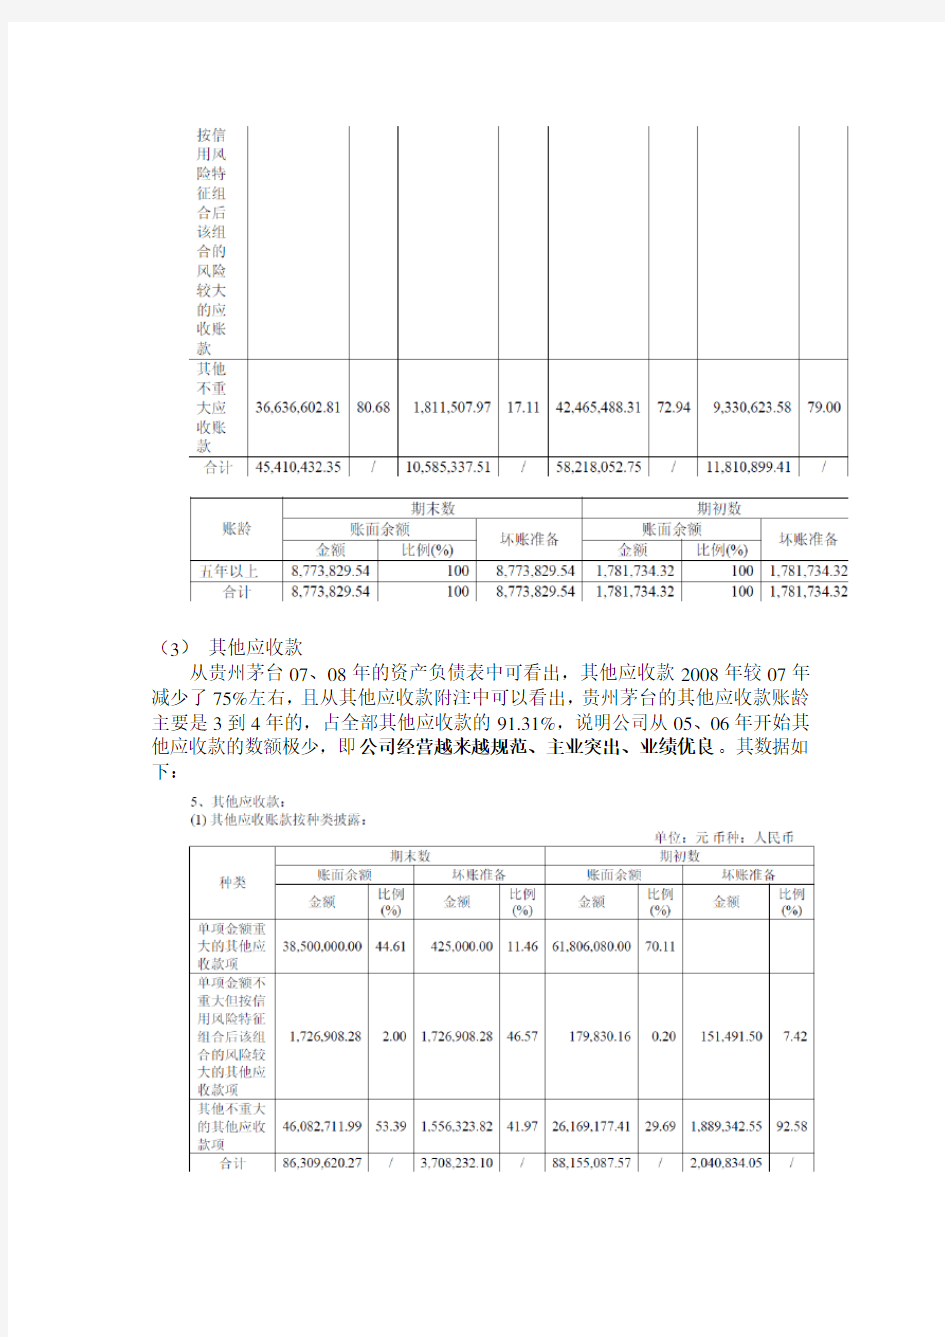 贵州茅台财务报告分析